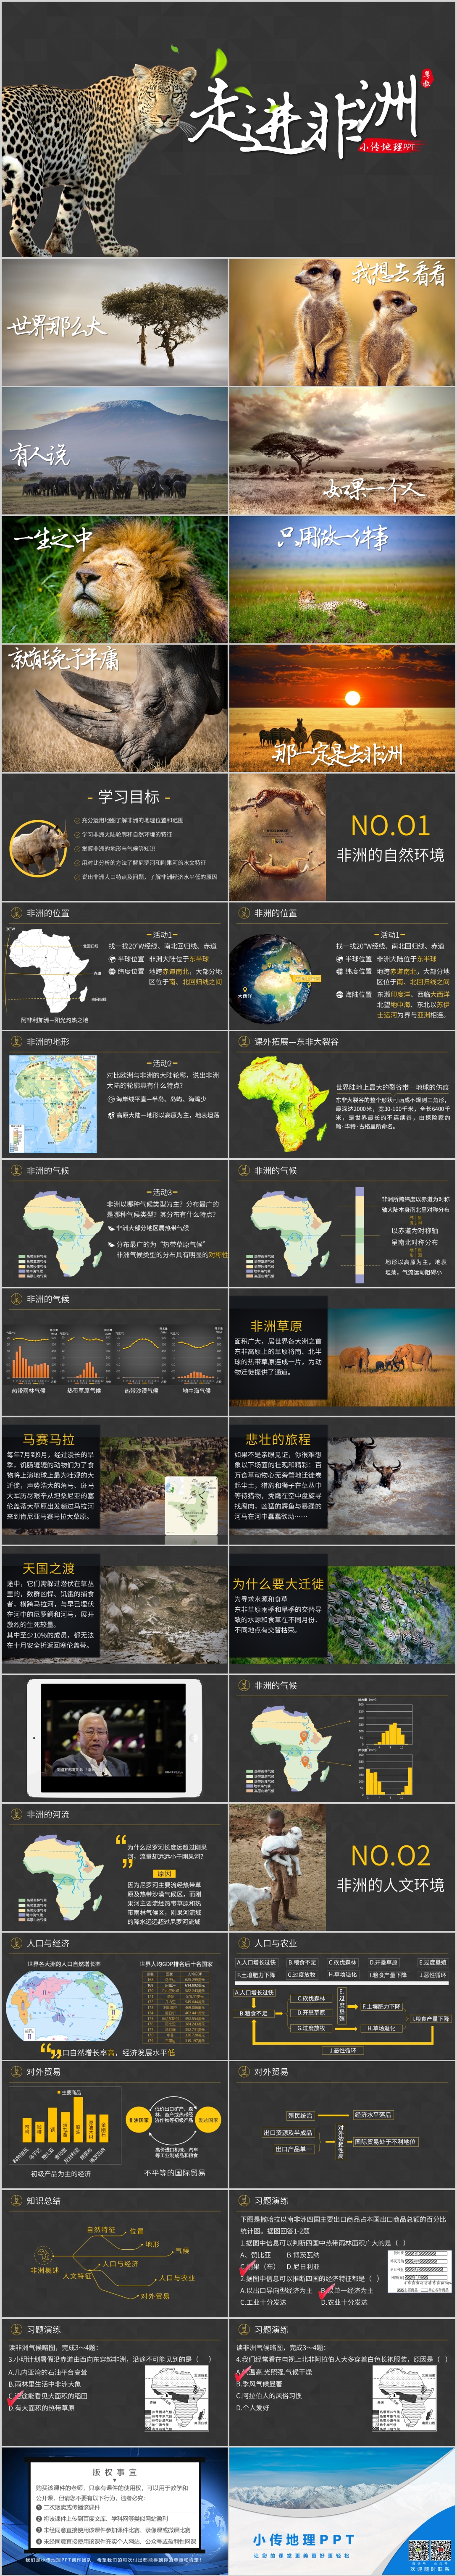 【图片集】10.1非洲概述.jpg